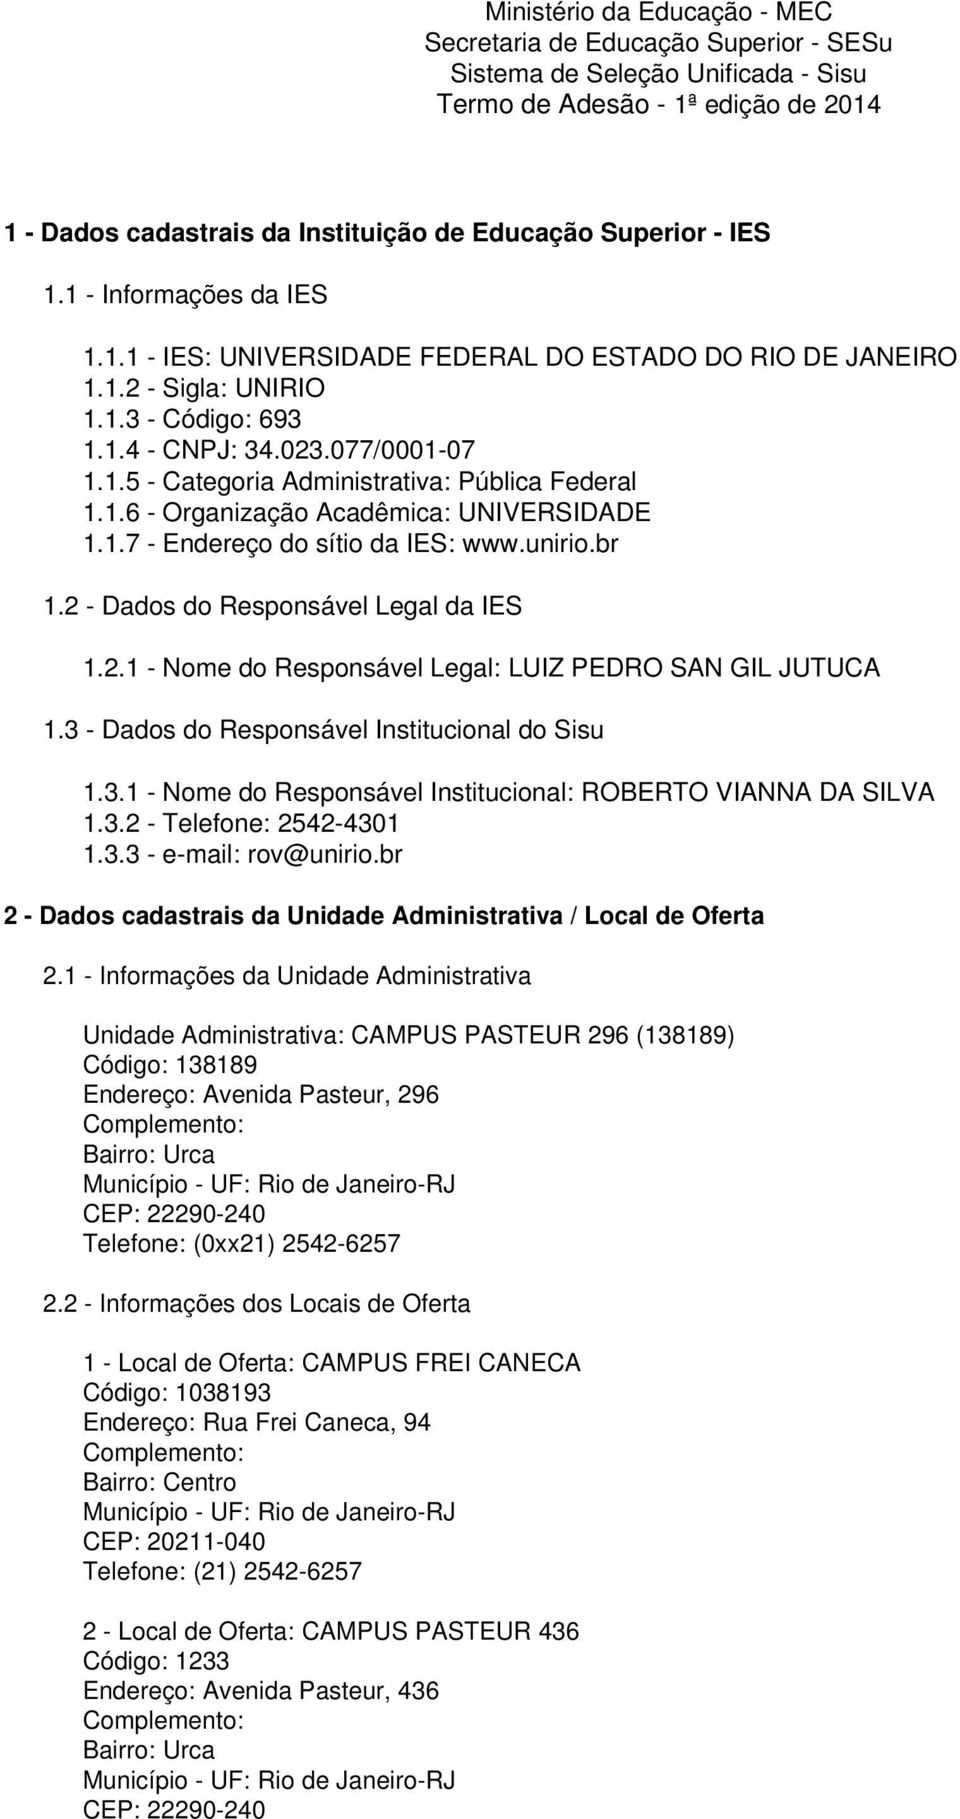 1.6 - Organização Acadêmica: UNIVERSIDADE 1.1.7 - Endereço do sítio da IES: www.unirio.br 1.2 - Dados do Responsável Legal da IES 1.2.1 - Nome do Responsável Legal: LUIZ PEDRO SAN GIL JUTUCA 1.